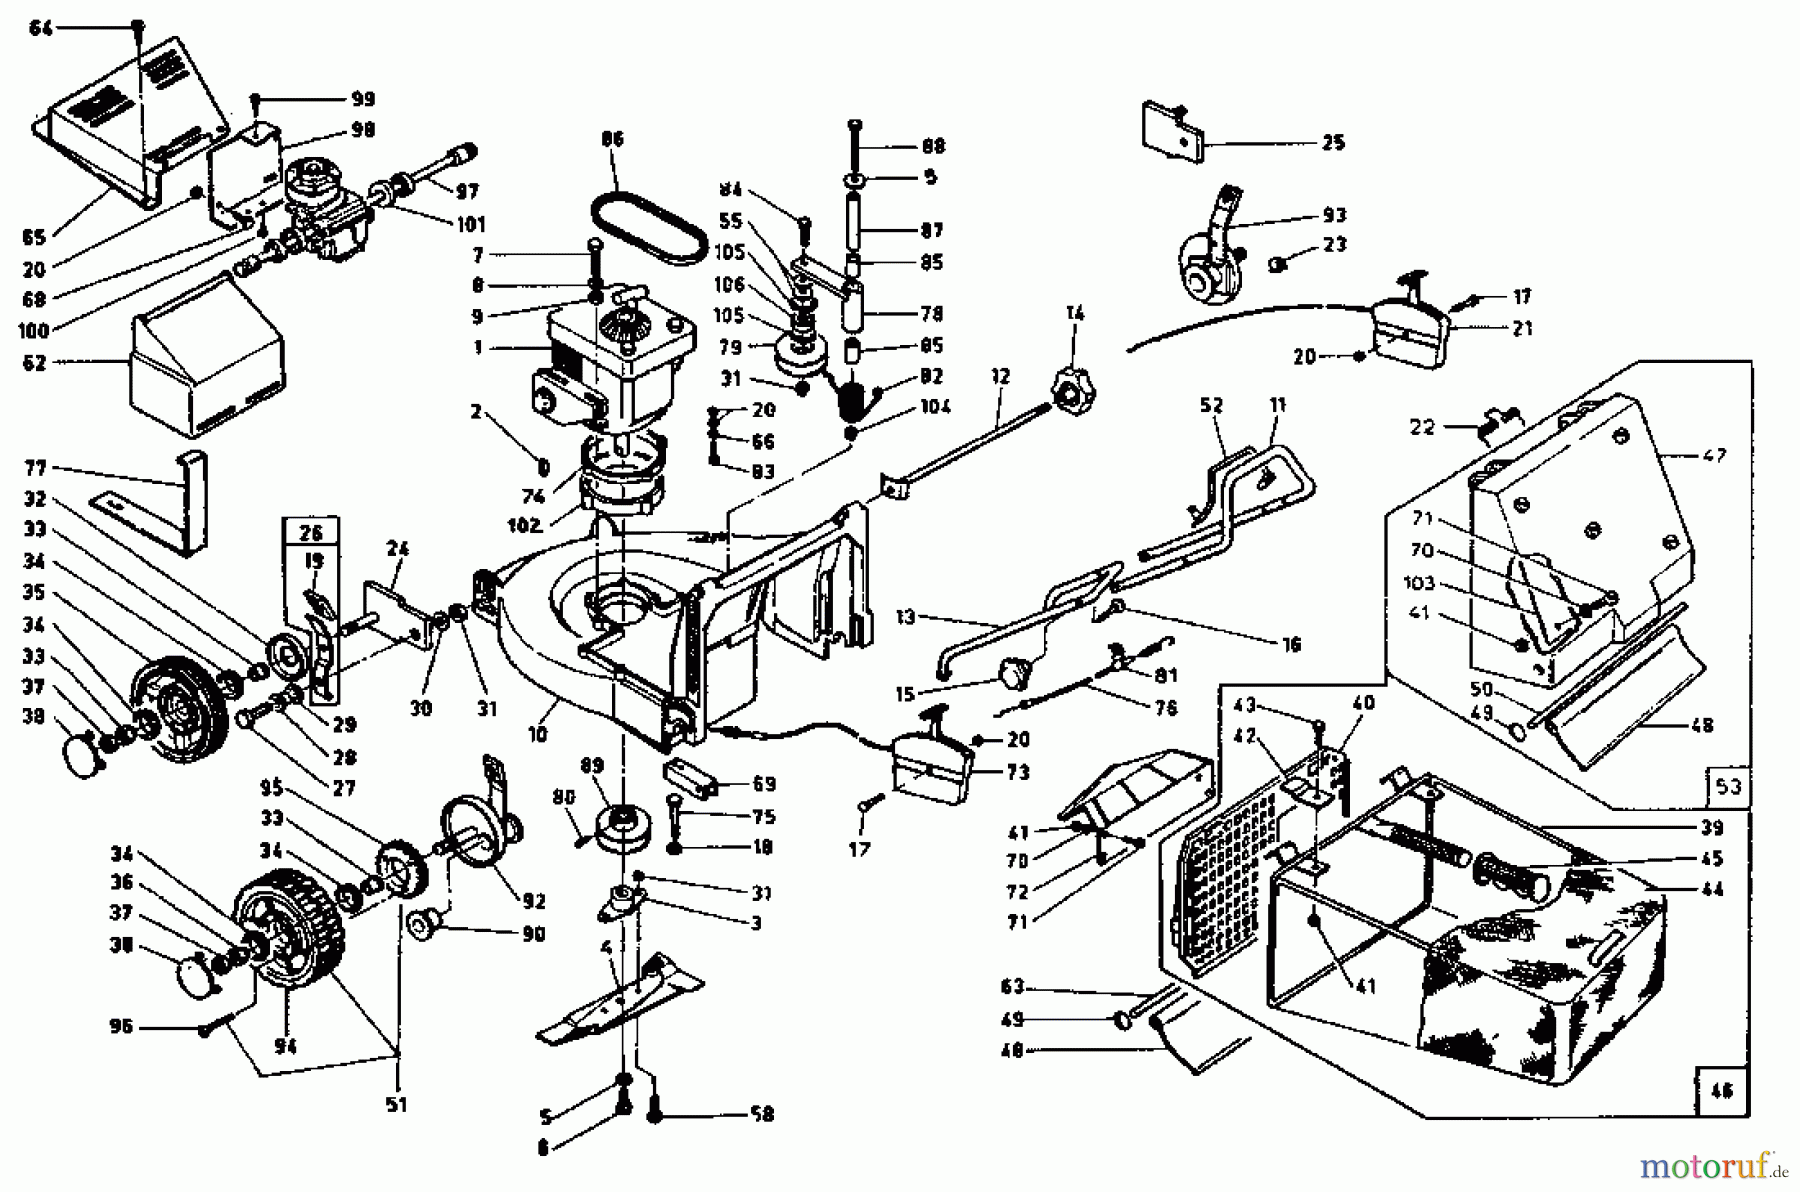  Rotaro Motormäher mit Antrieb ROTARO  55 SV 189-0158  (1989) Grundgerät